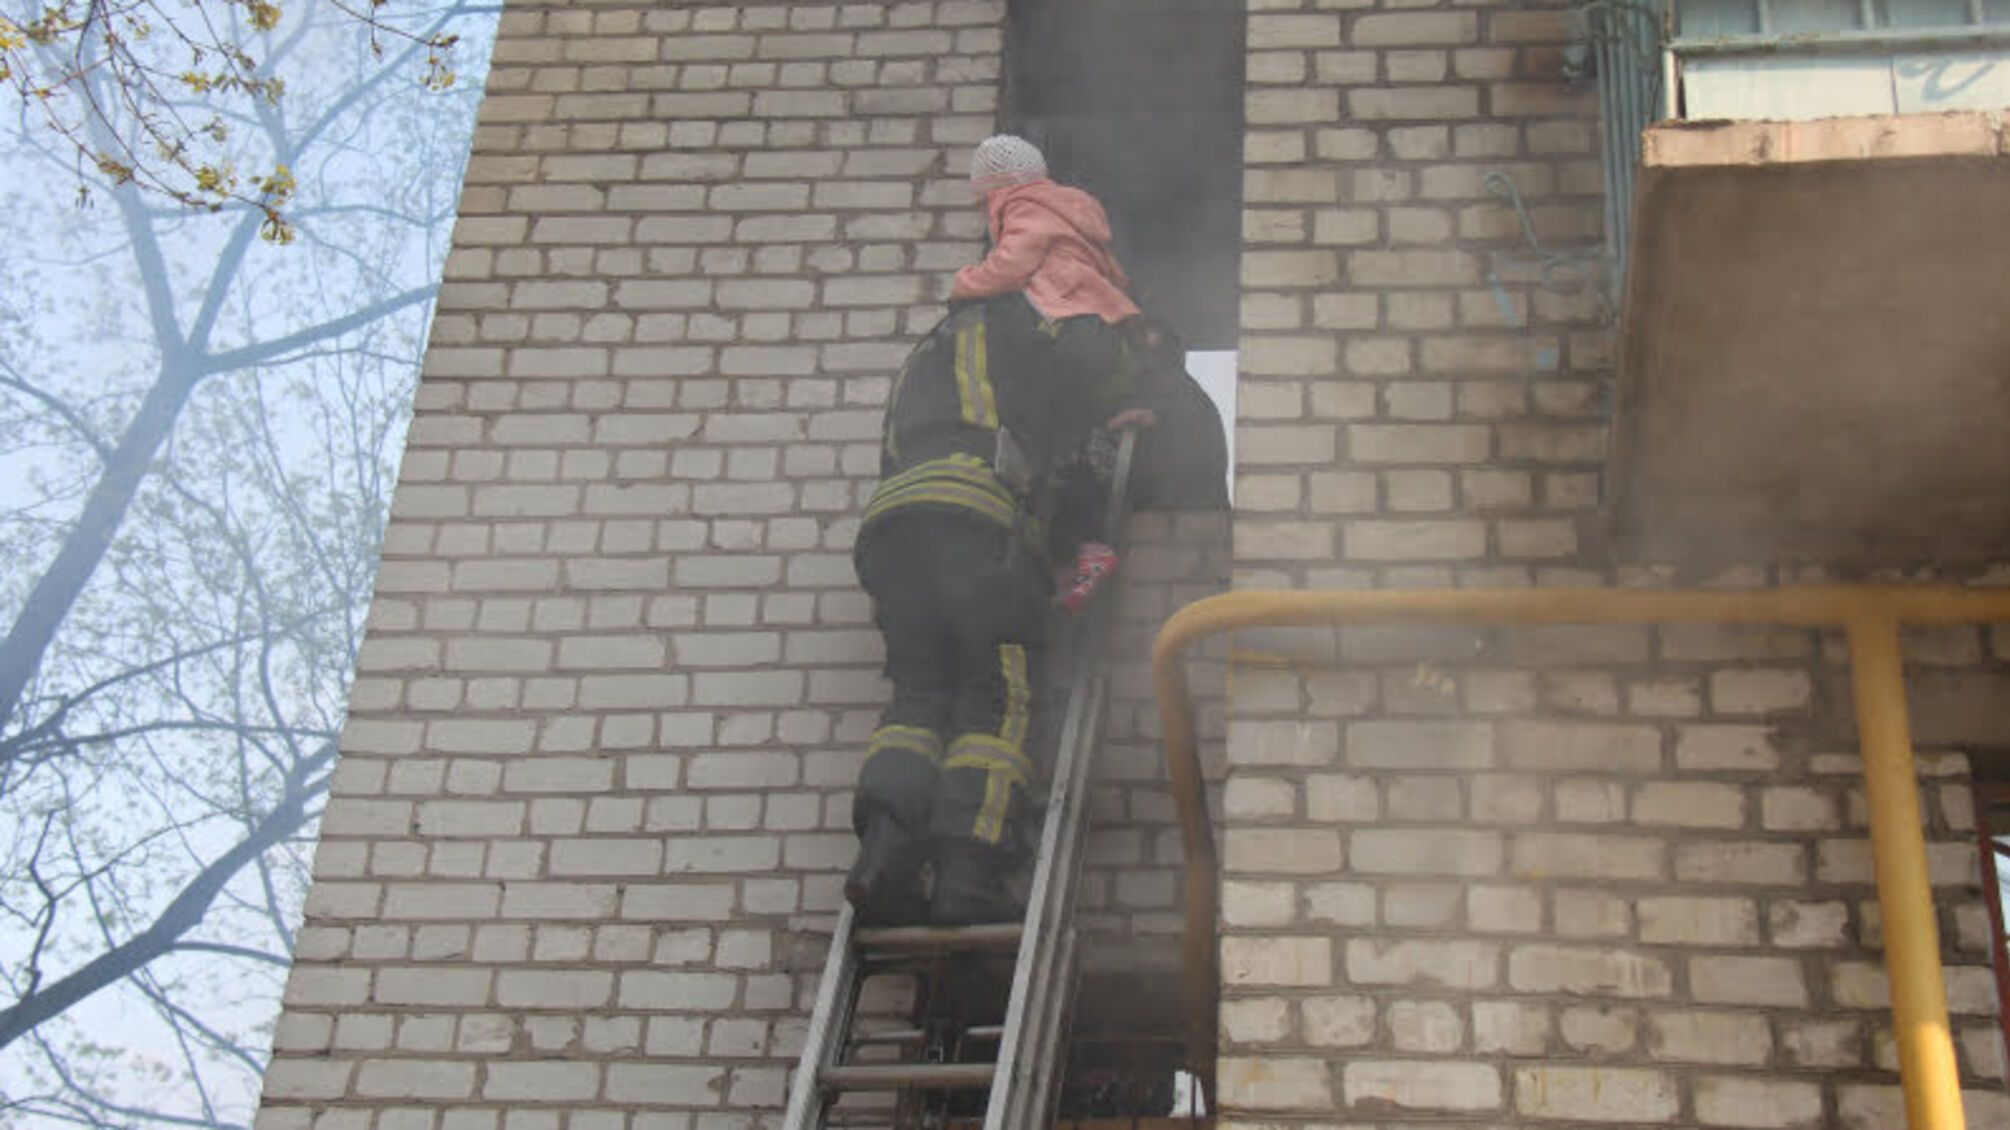 Київ: під час пожежі в житловому будинку евакуйовано 8 осіб, з яких 3 дітей